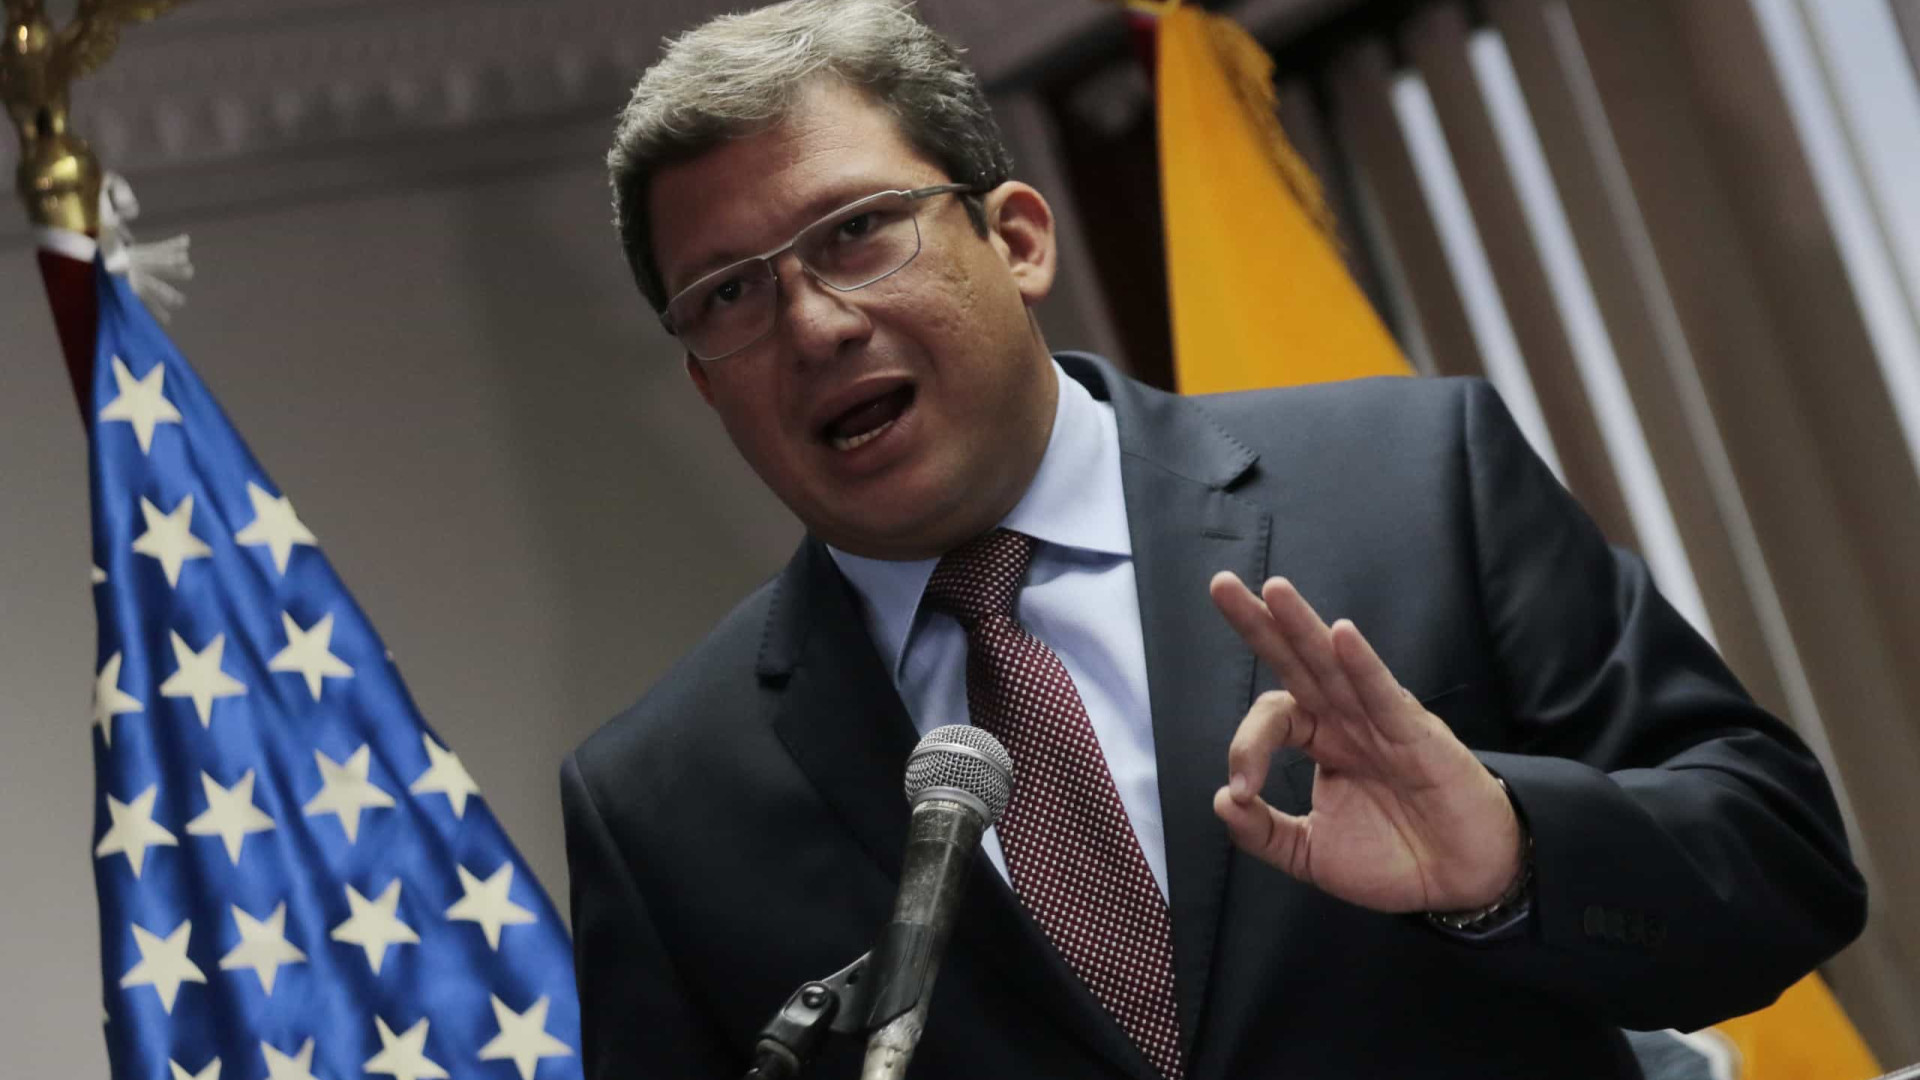 Para embaixador dos EUA, corrupção é 'o câncer do Brasil'